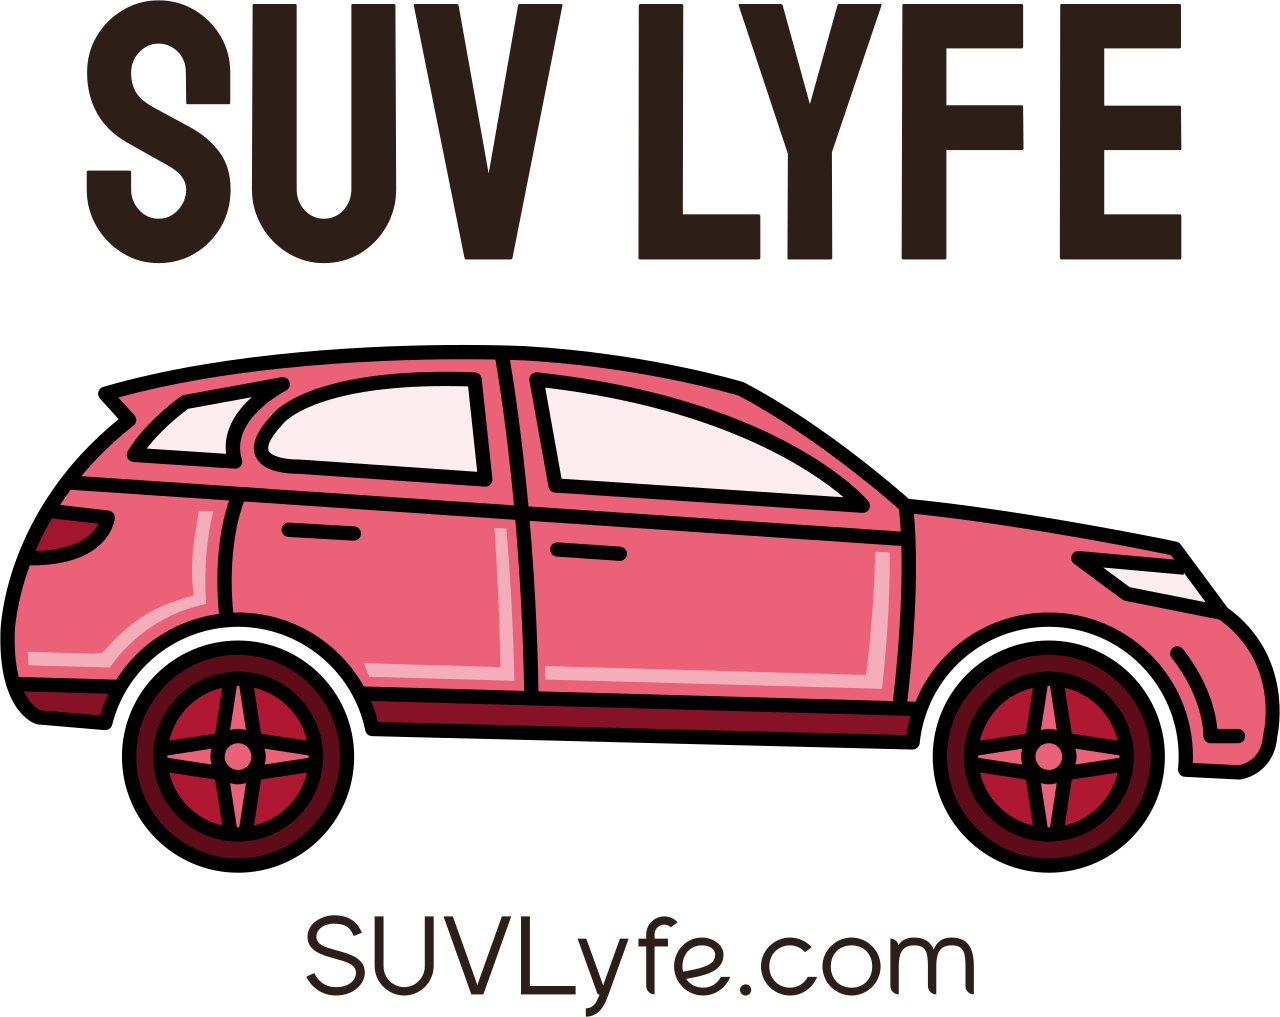 SUV LYFE's logo